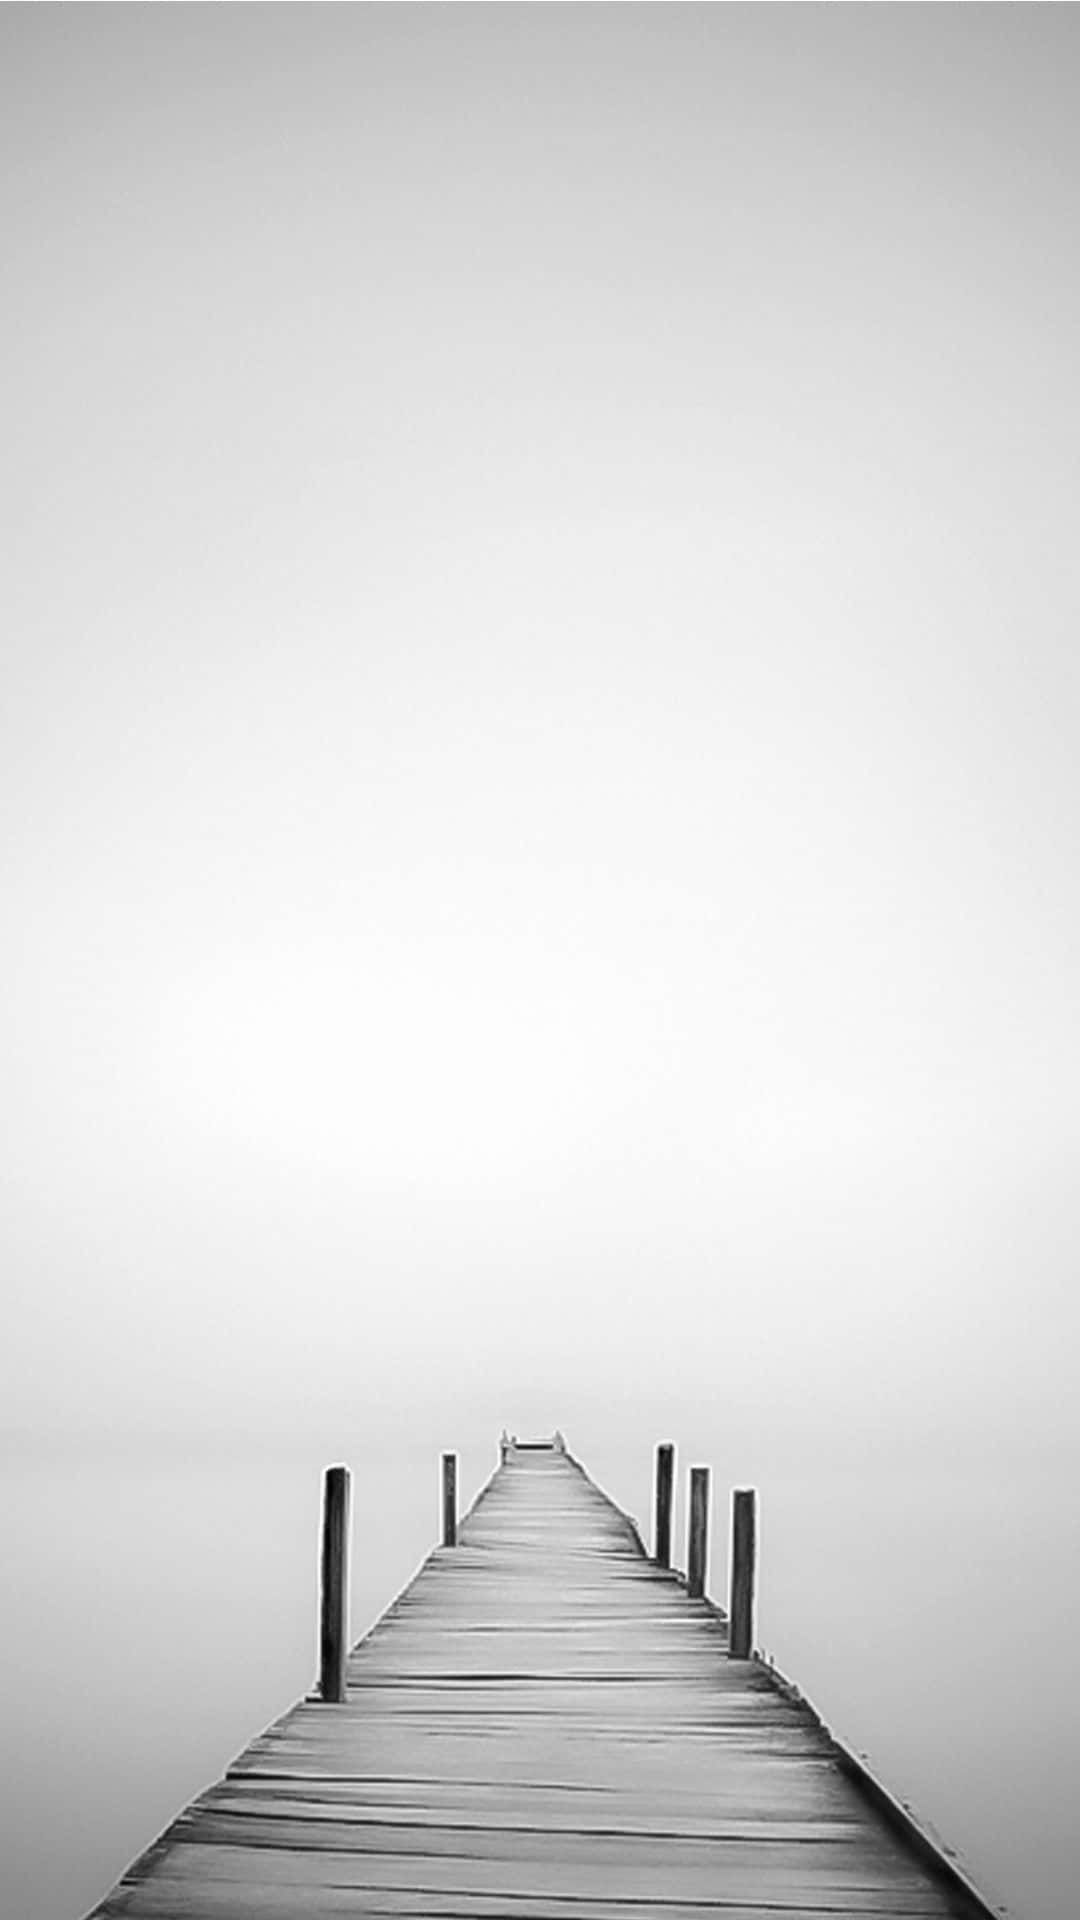 Etsort-hvidt Billede Af En Badebro I Tågen.